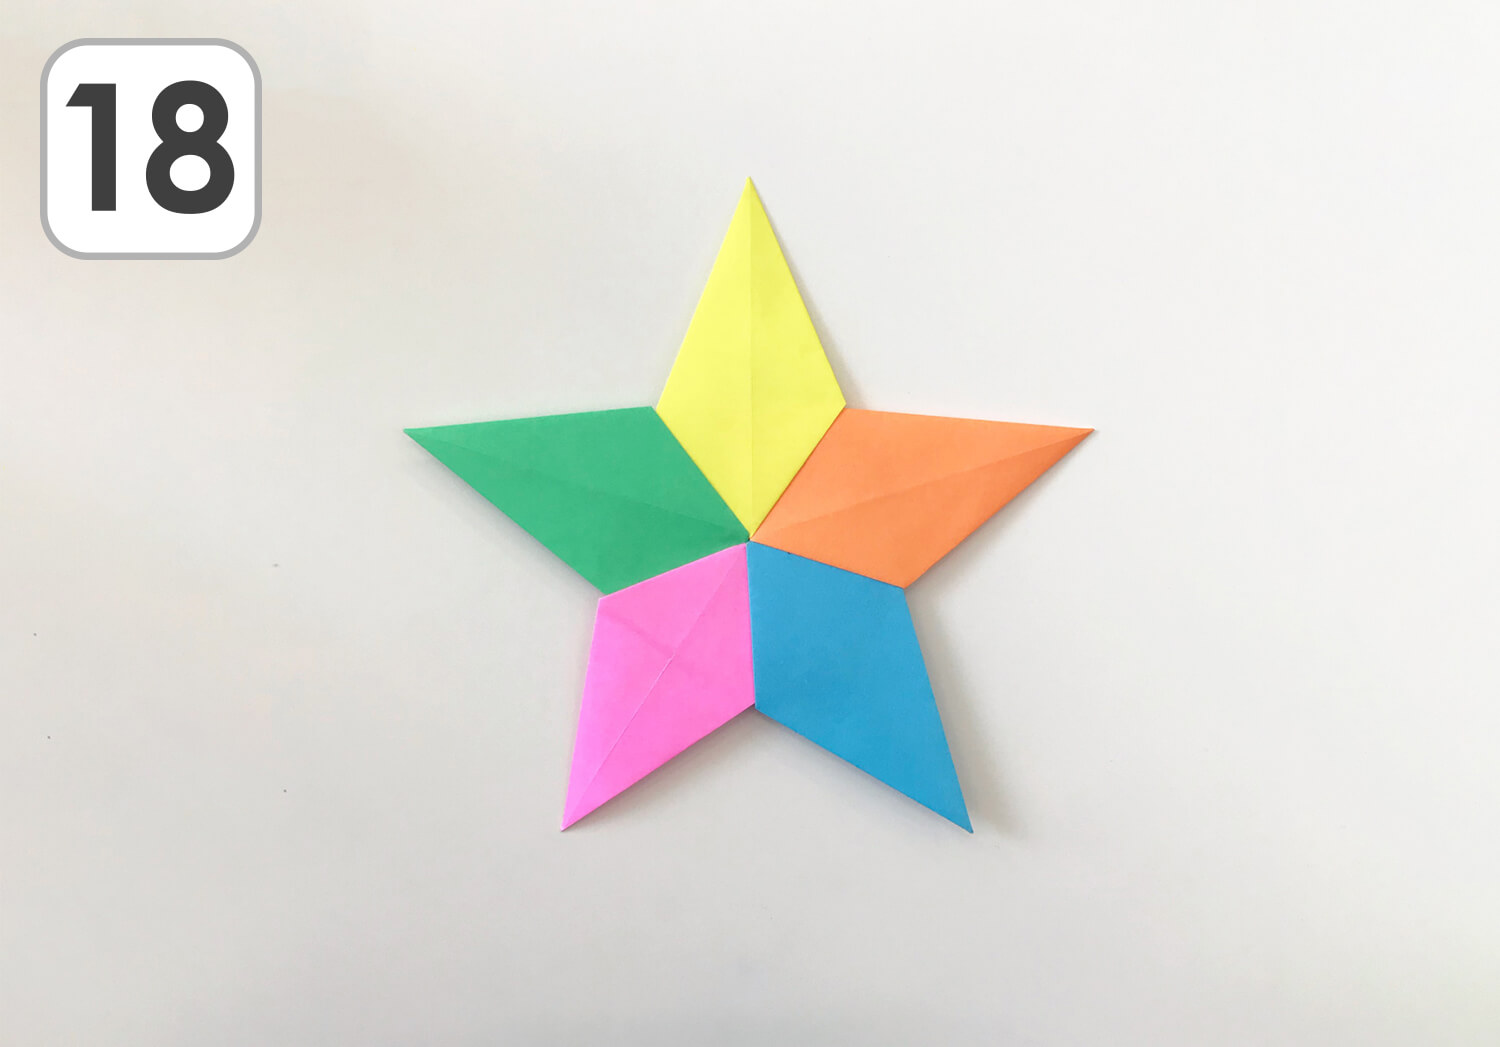 超簡単 折り紙で作る星のアイデアまとめ Lalaほいく ららほいく